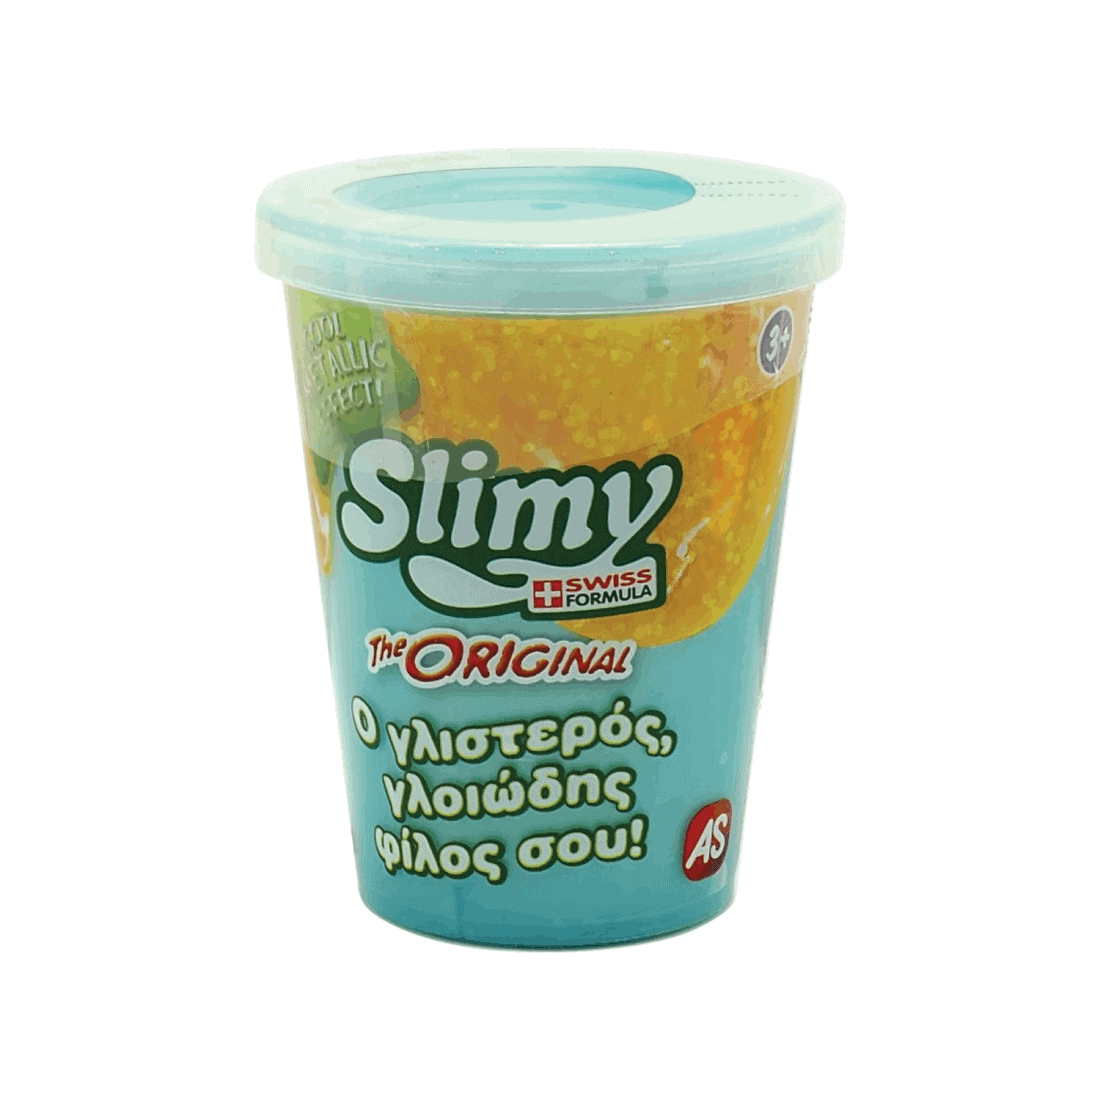 Χλαπατσα Original Slimy Metallic - Γαλάζια